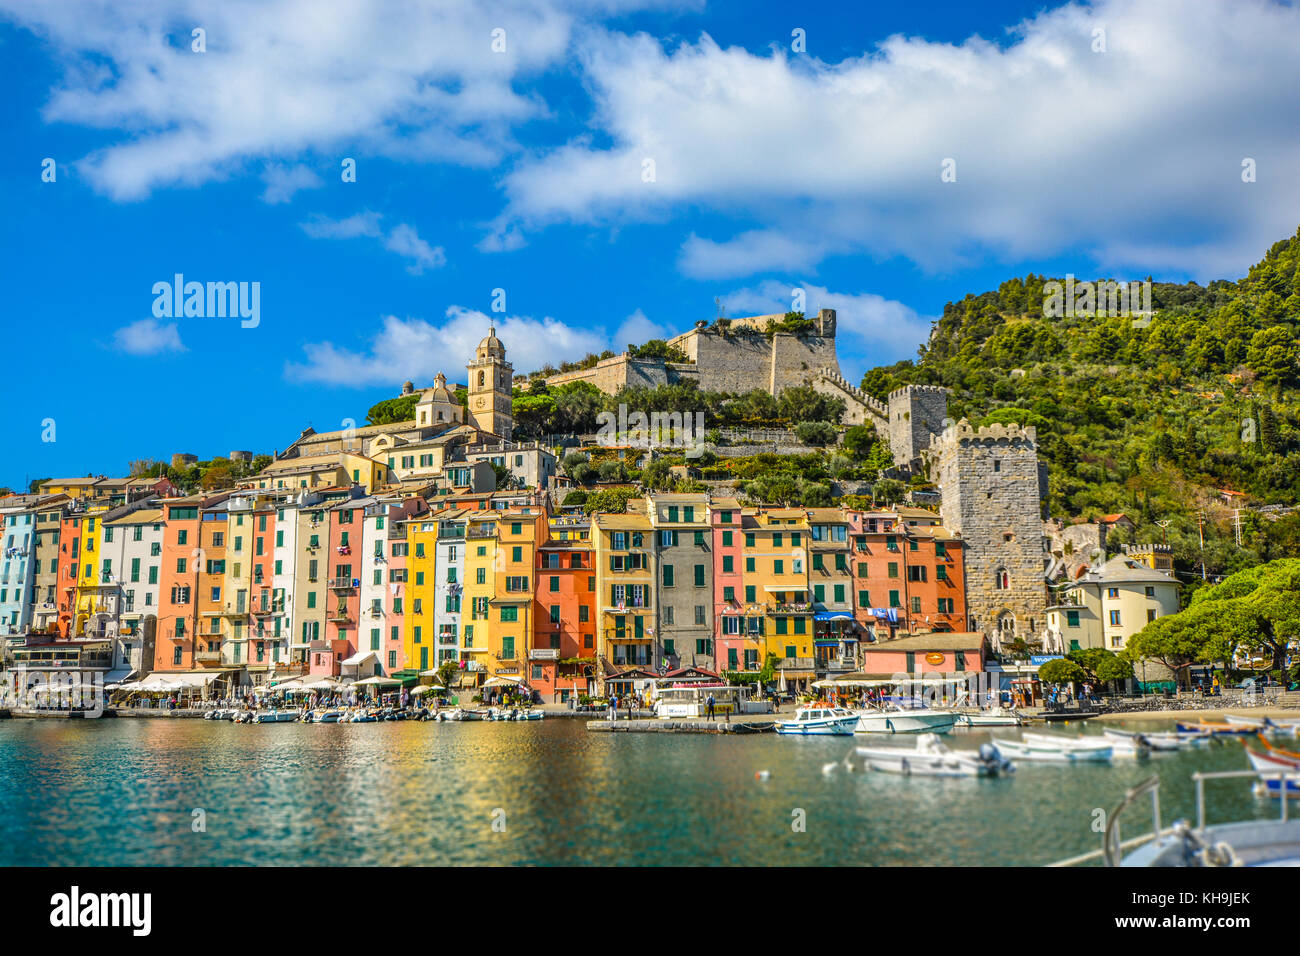 La colorata costa ligure a Porto Venere, un sito del Patrimonio Mondiale vicino alle Cinque Terre in Italia Foto Stock